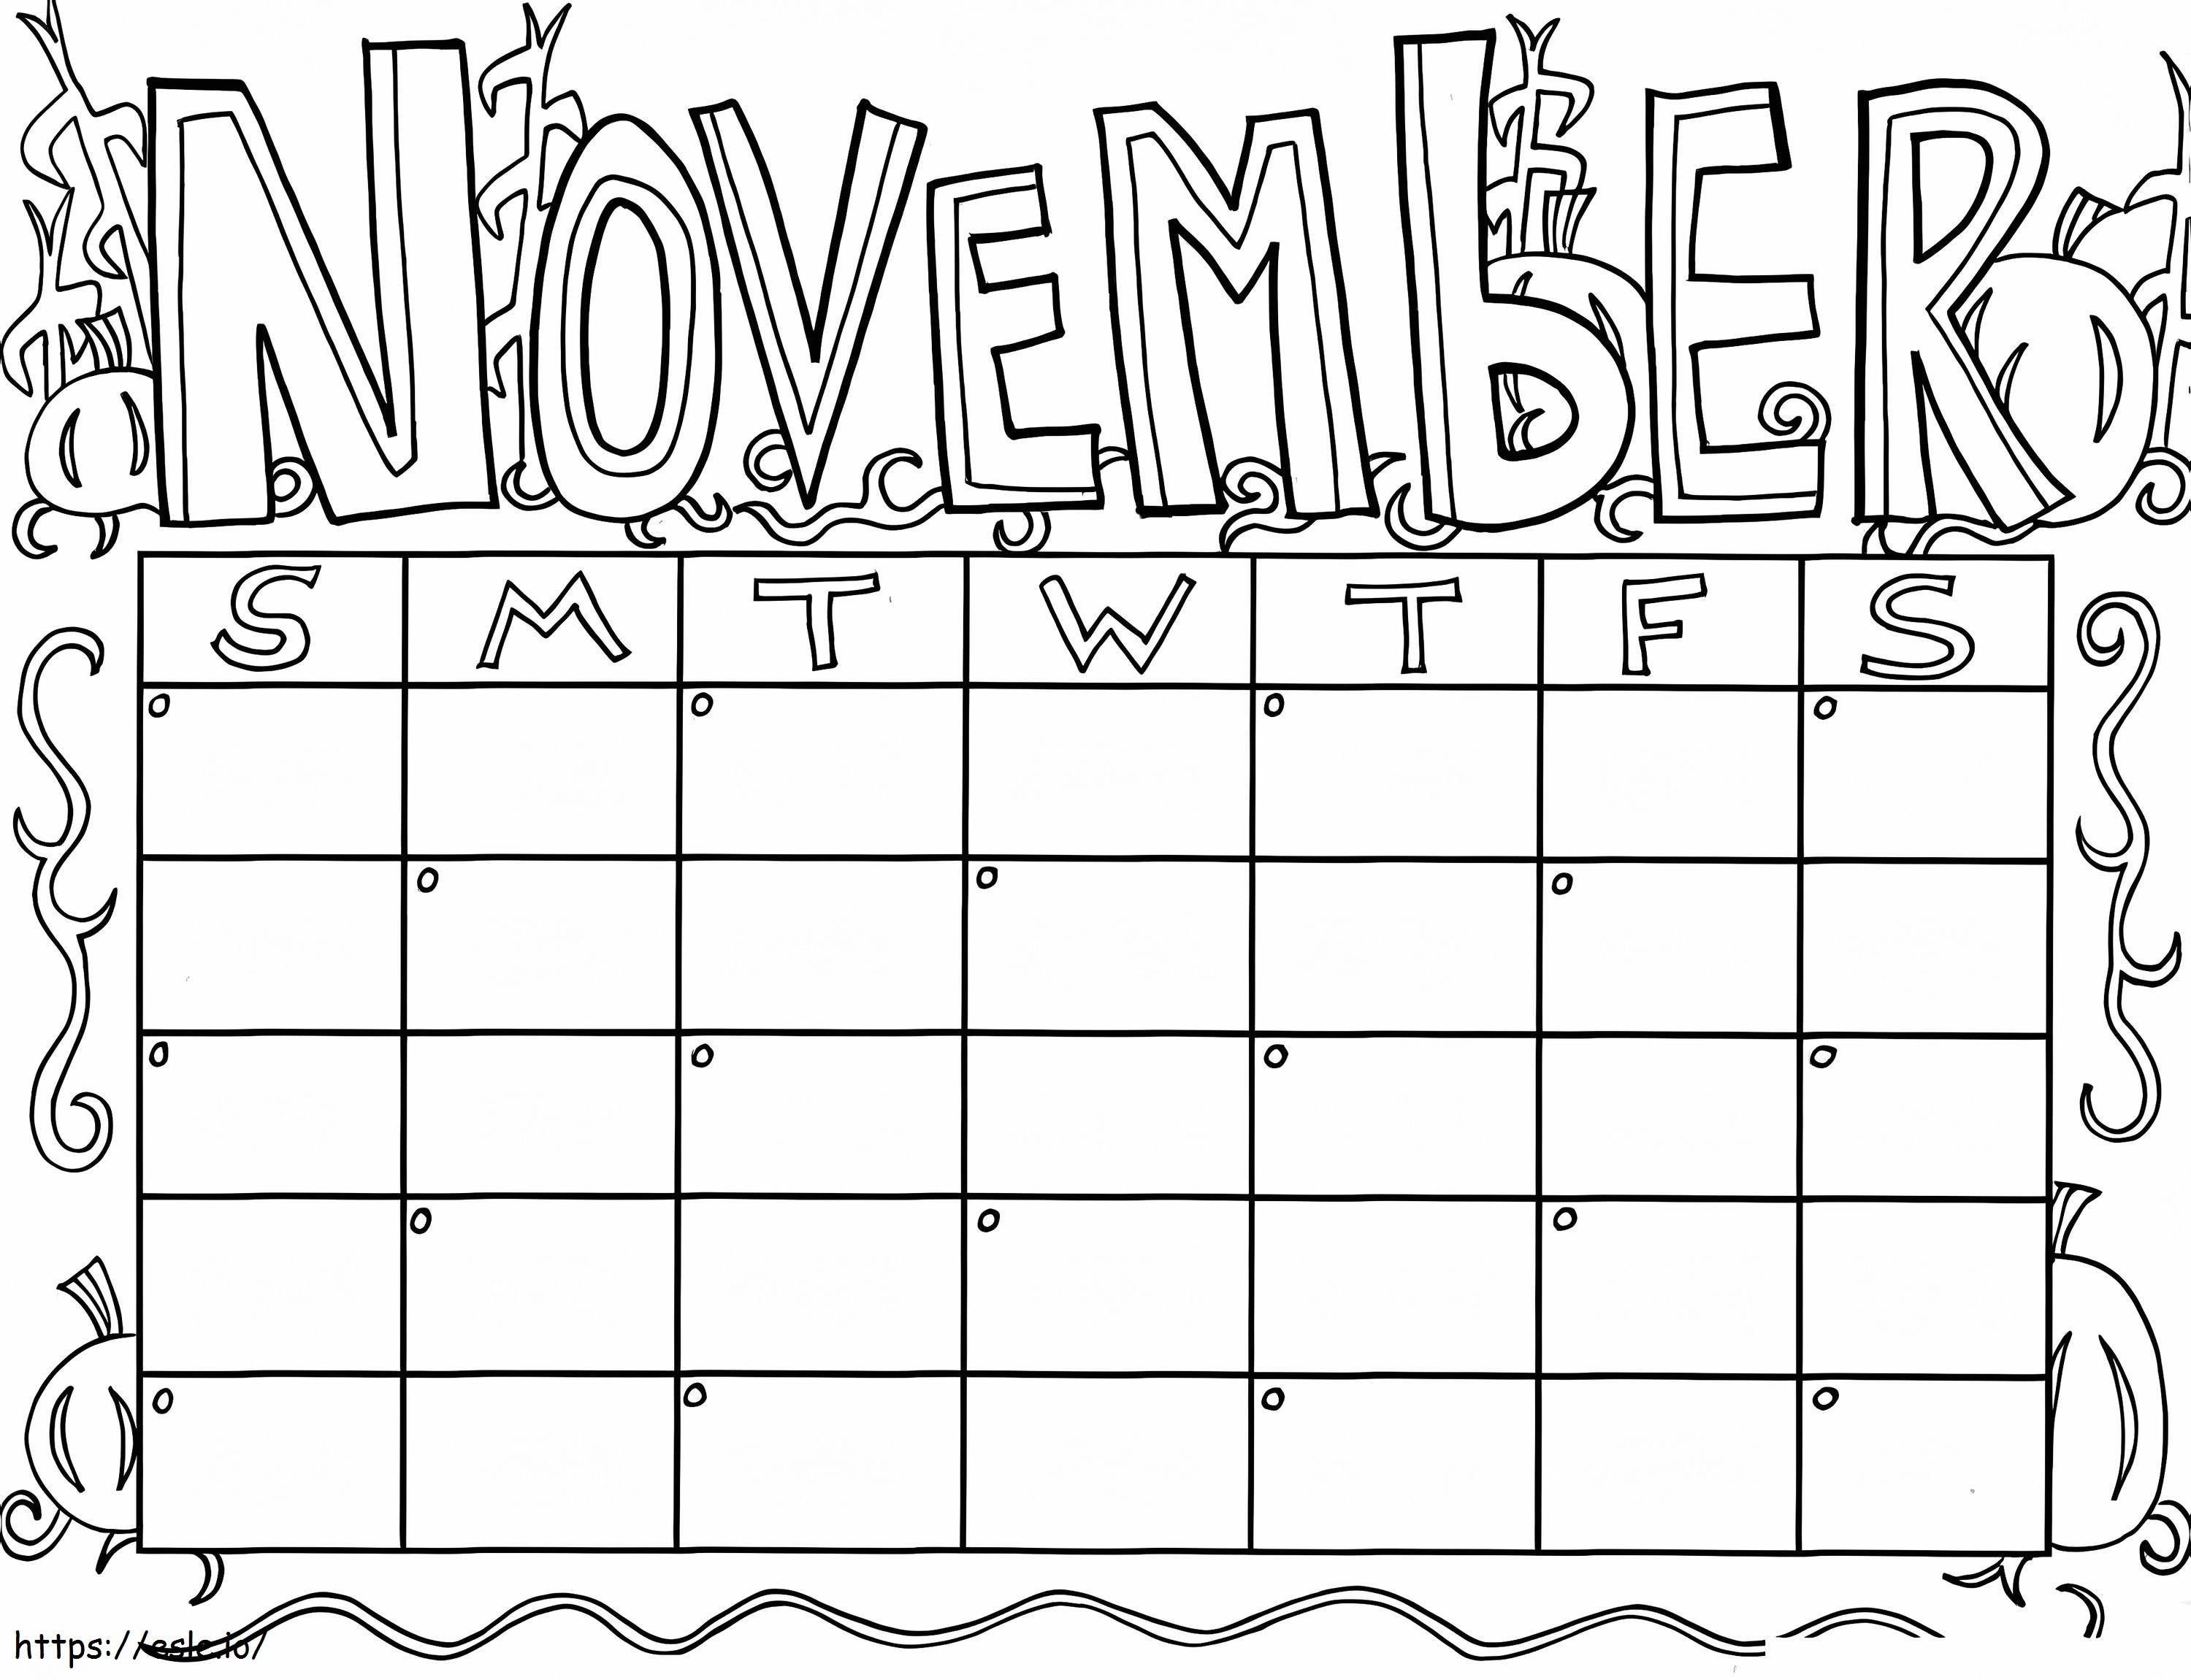 November Kalender kleurplaat kleurplaat